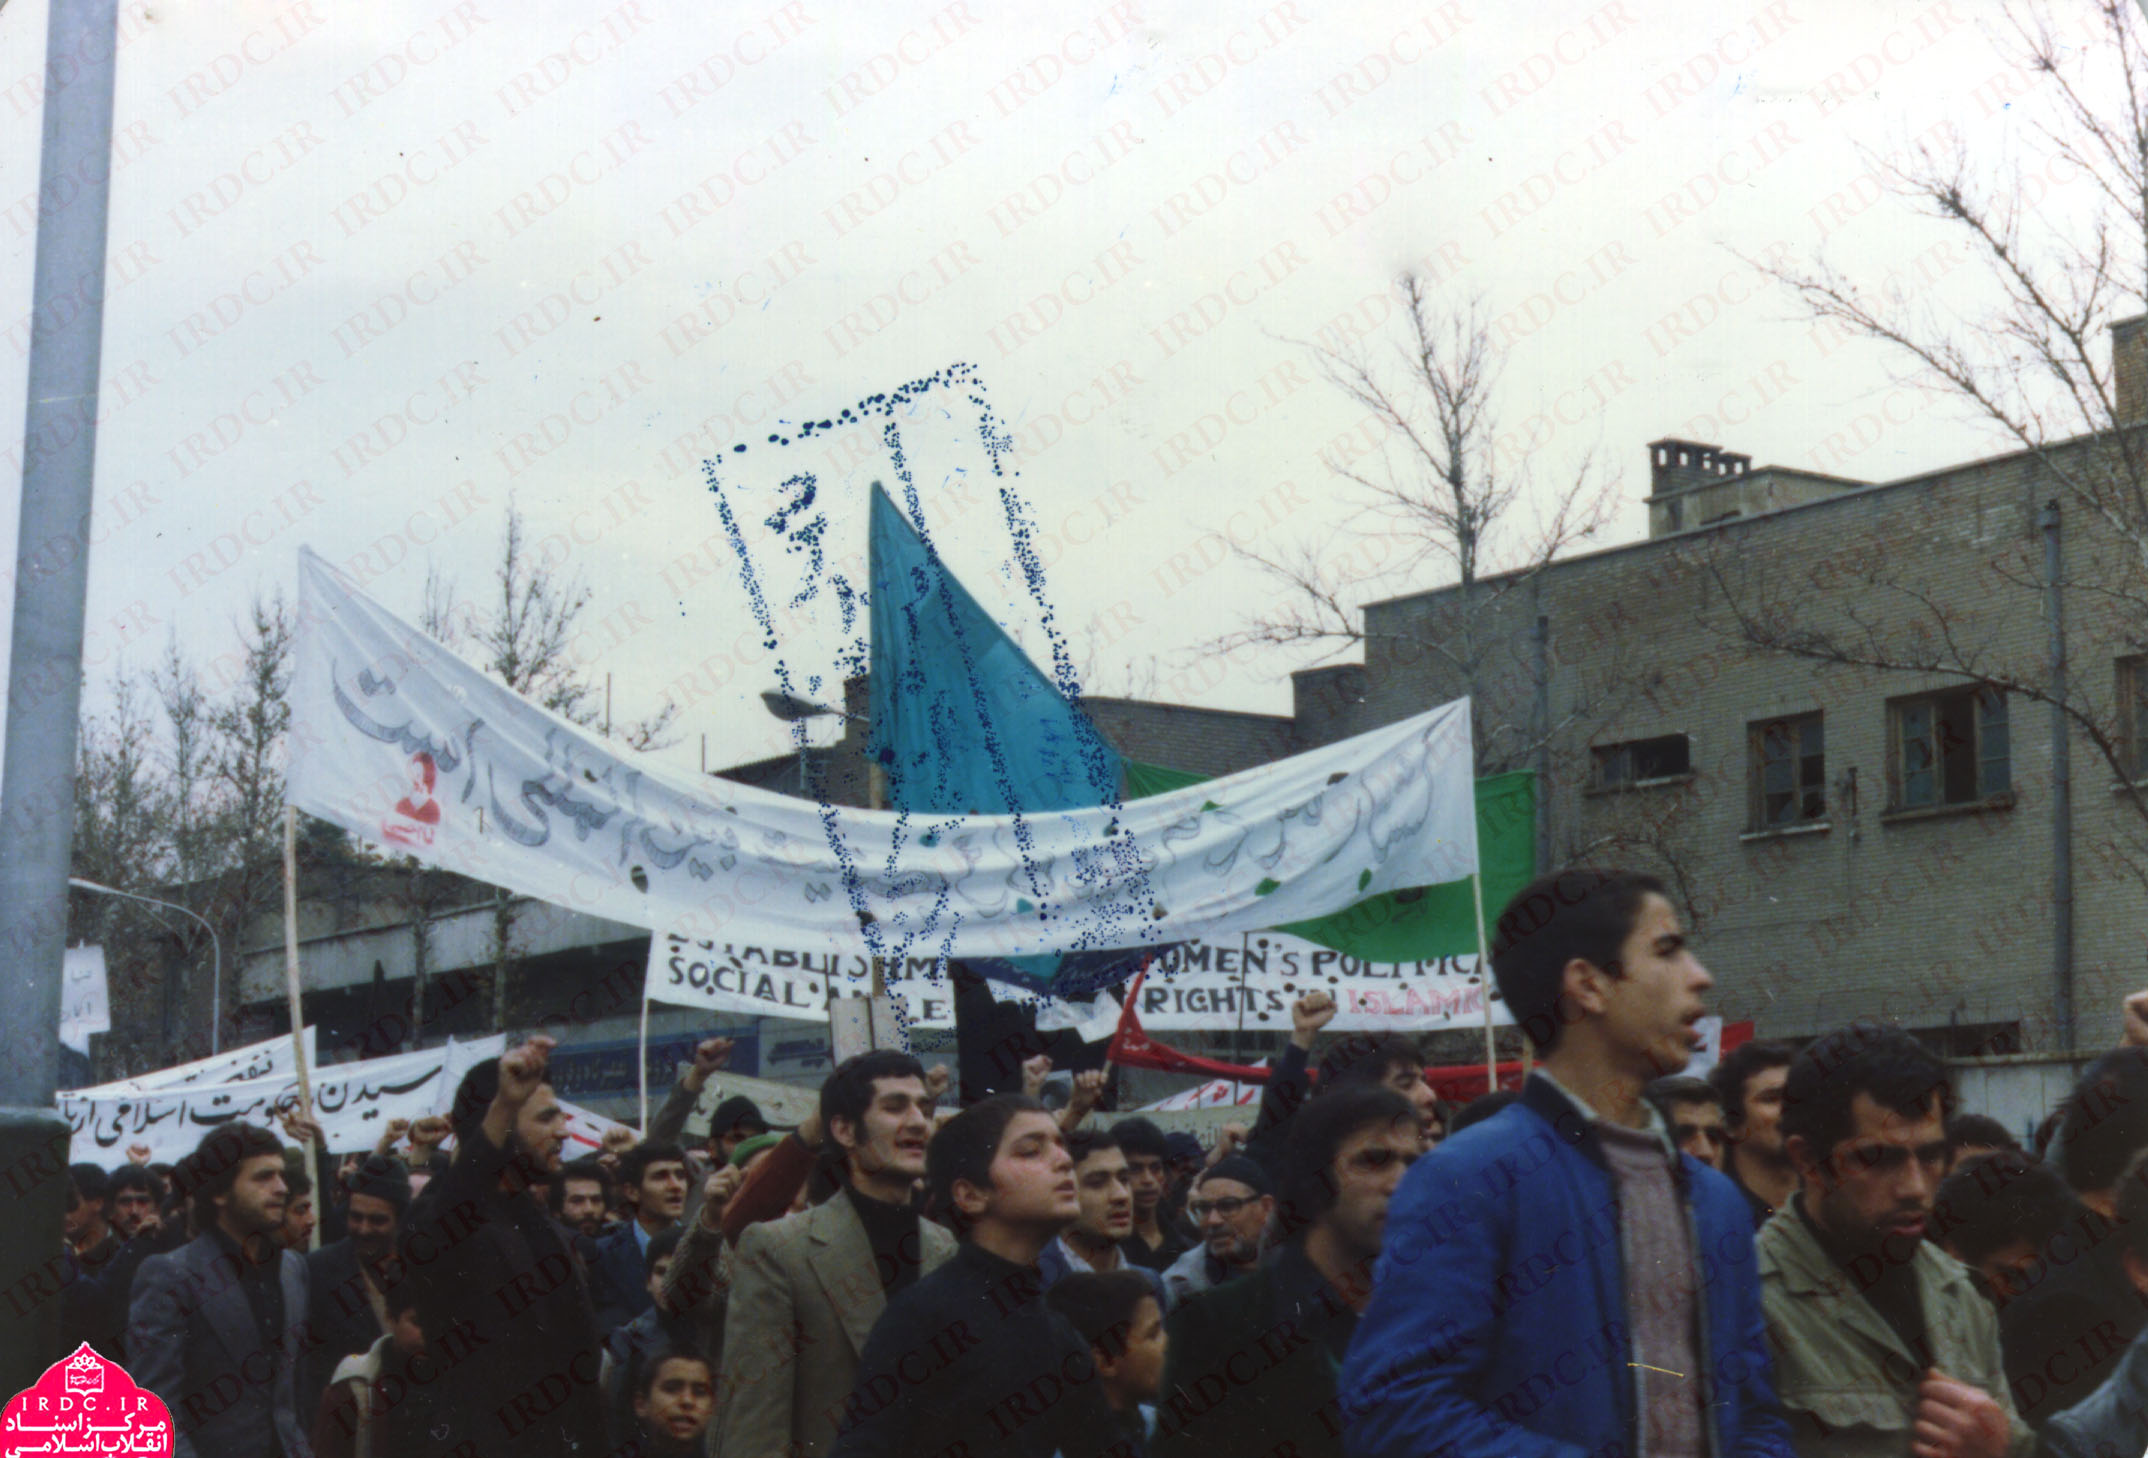 مبارزه دانشجویان ایرانی مقیم اروپا علیه رژیم پهلوی